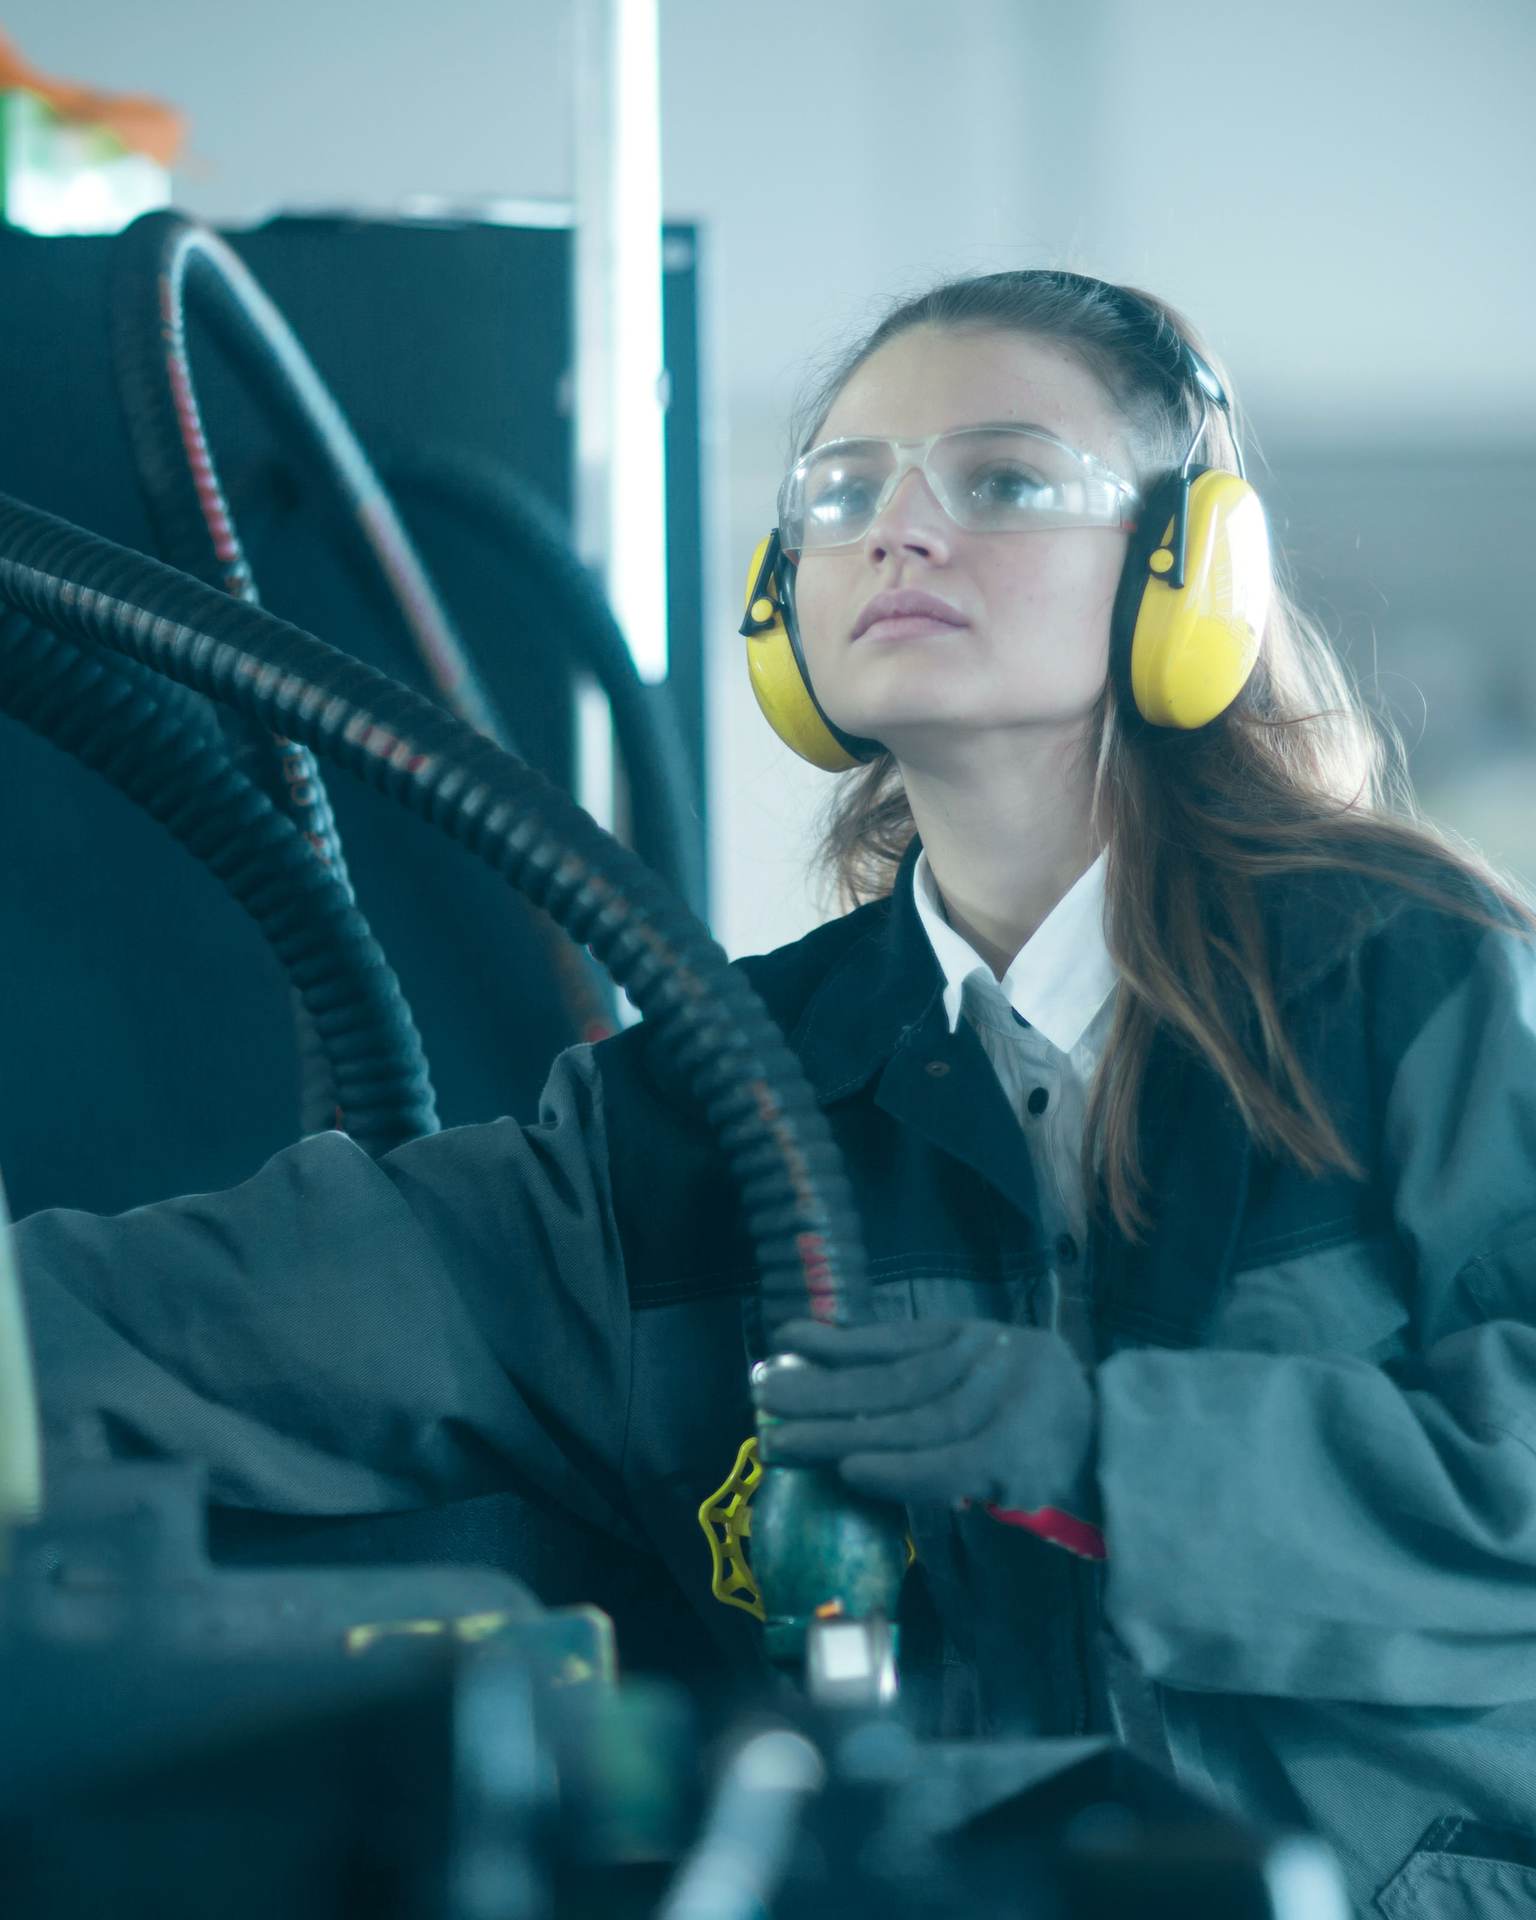 Eine Frau trägt Gehörschutz während sie an einer industriellen Maschine arbeitet.